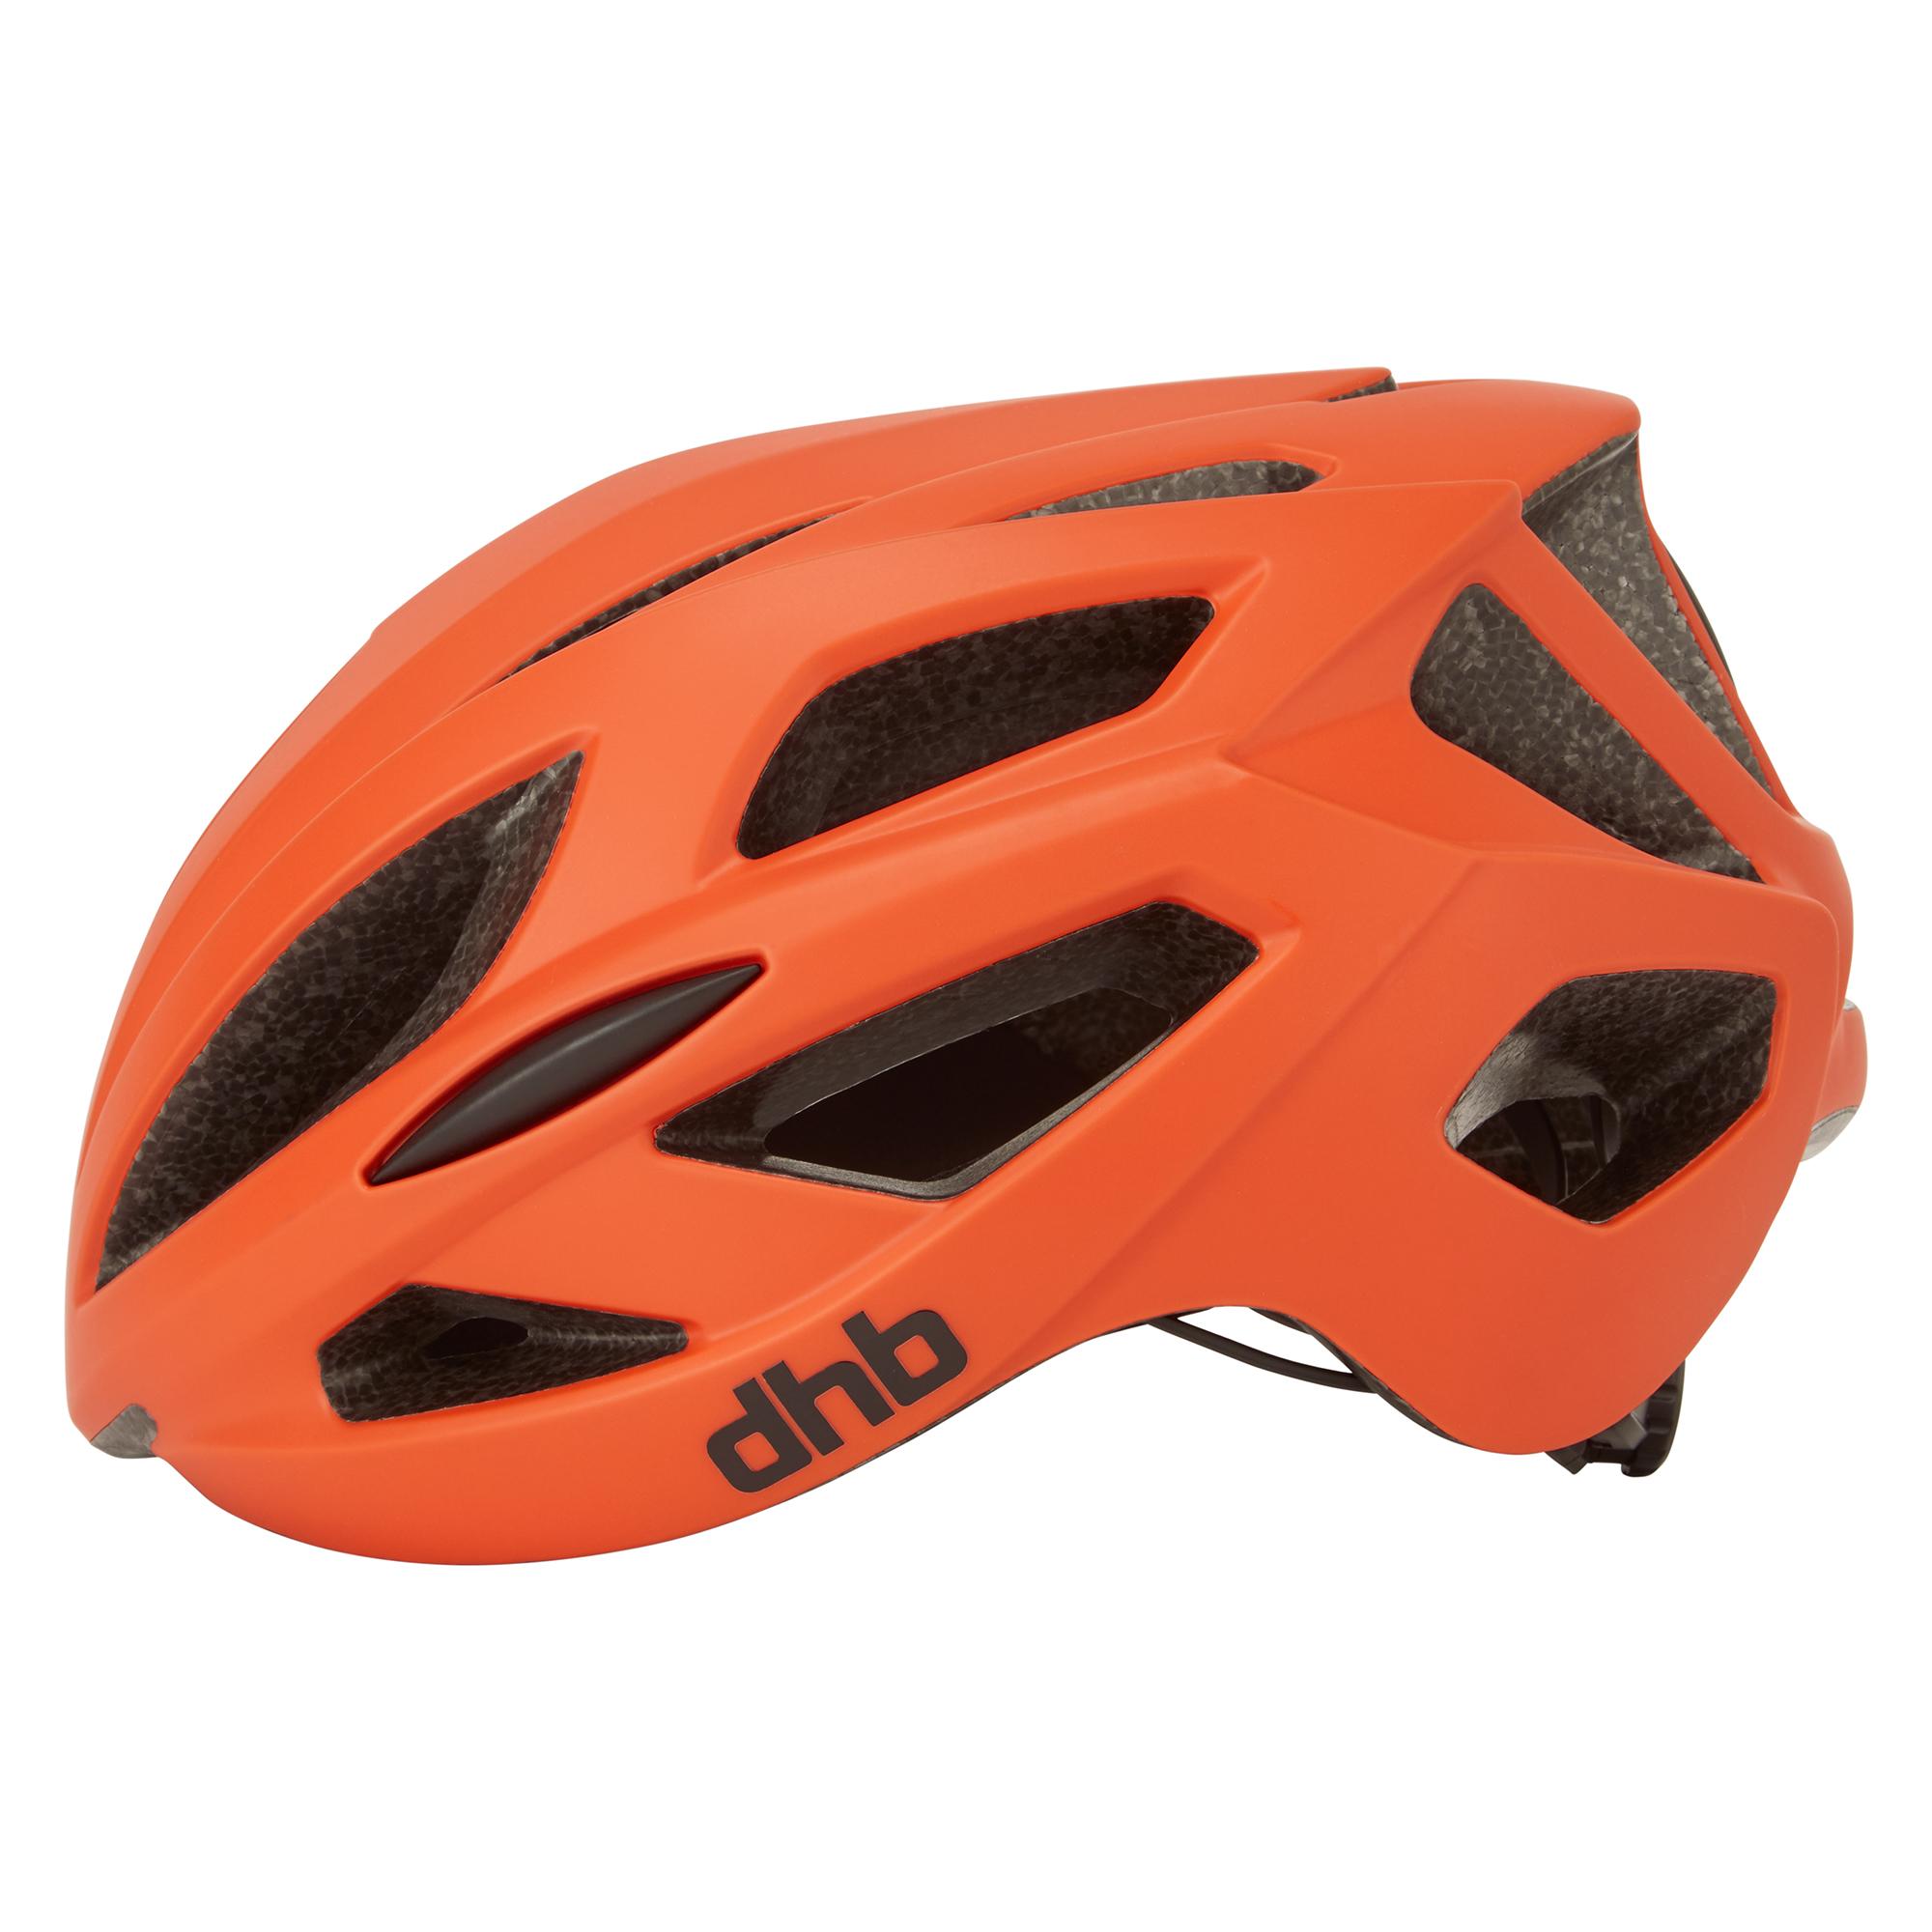 Dhb R3.0 Road Helmet - Orange